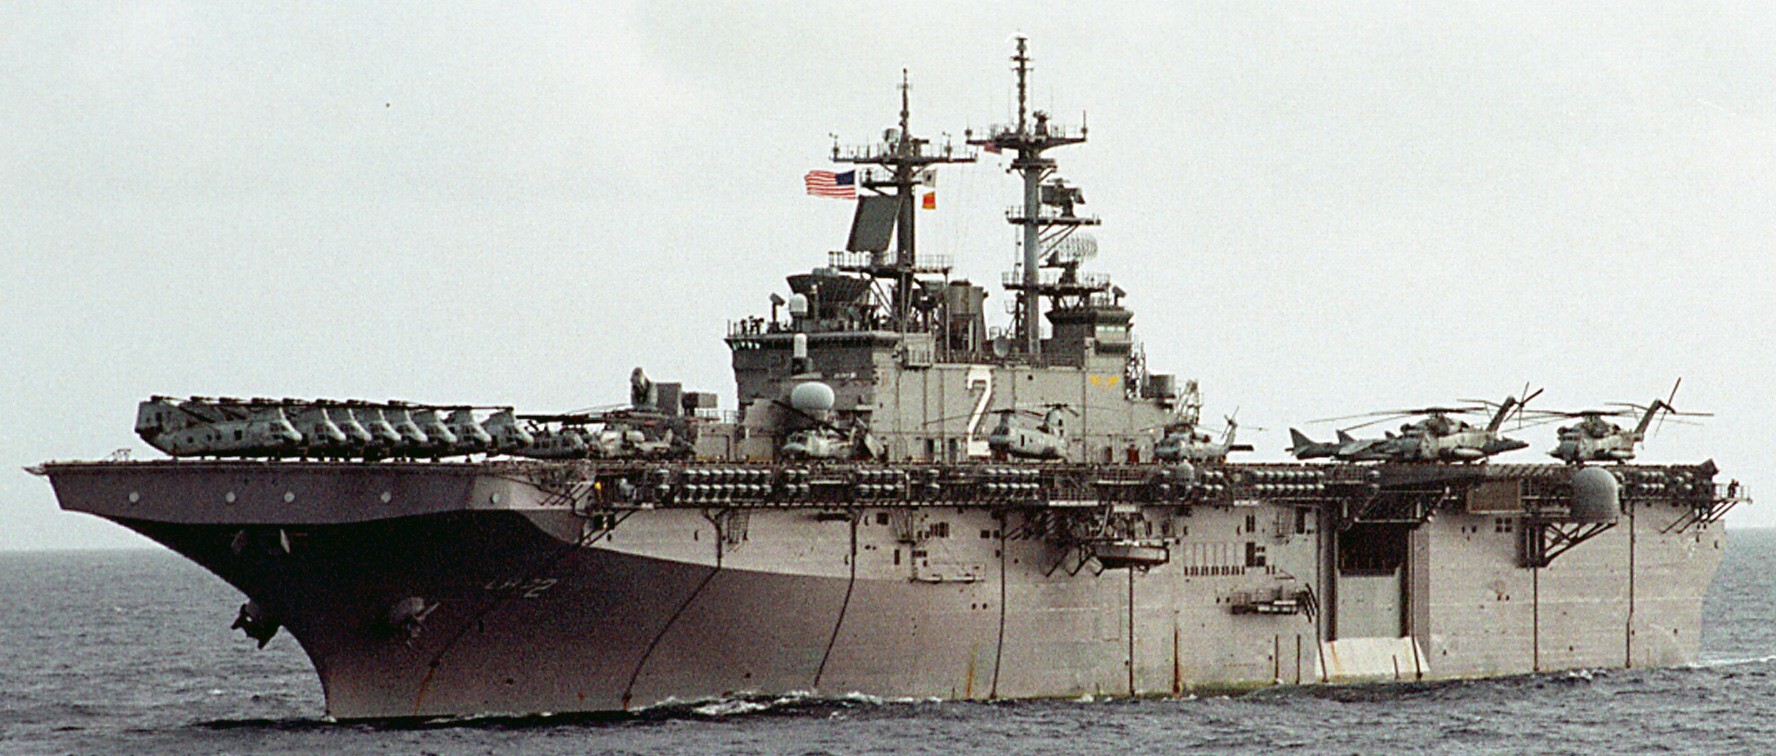 lhd-2 uss essex wasp class amphibious assault ship landing helicopter us navy marines hmm-262 23